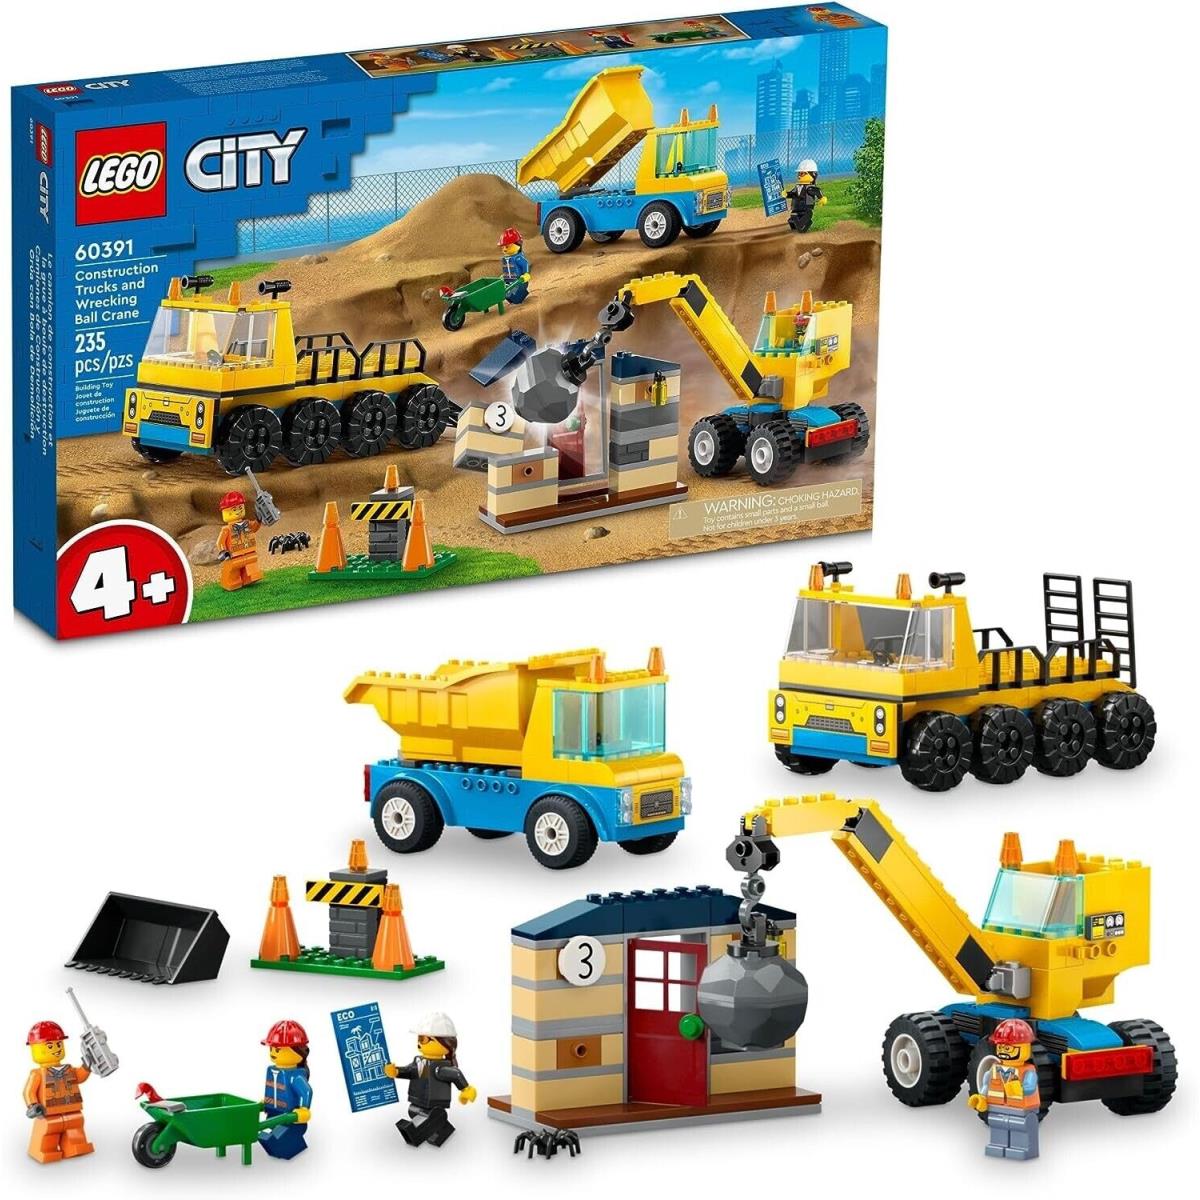 Lego City Construction Trucks Wrecking Ball Crane 60391 Box Not Mint D